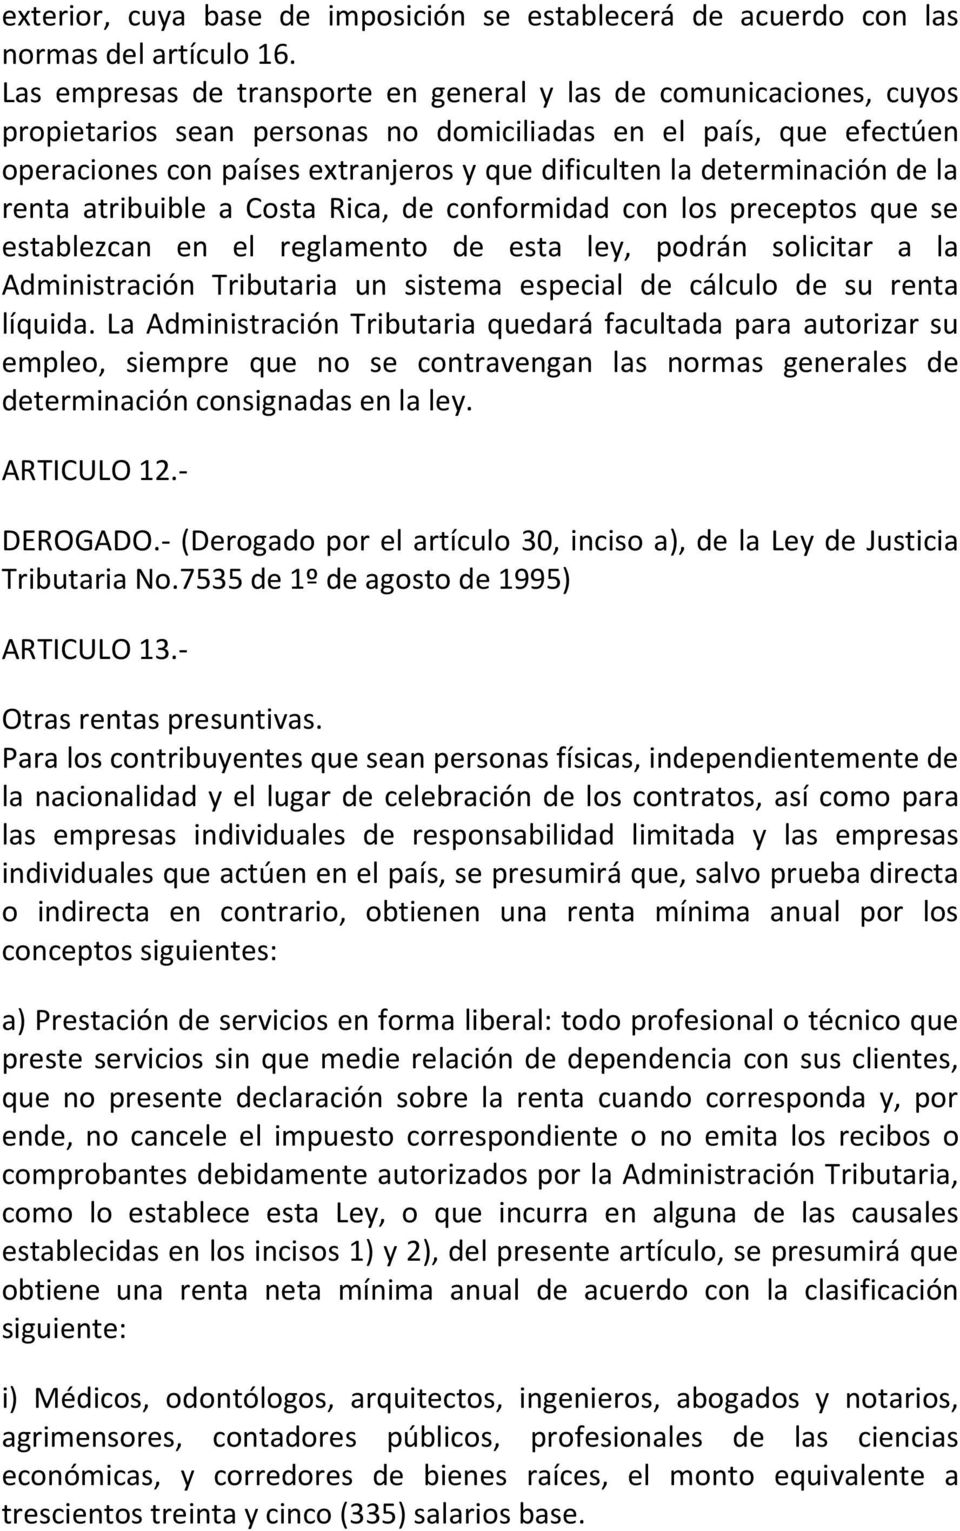 determinación de la renta atribuible a Costa Rica, de conformidad con los preceptos que se establezcan en el reglamento de esta ley, podrán solicitar a la Administración Tributaria un sistema